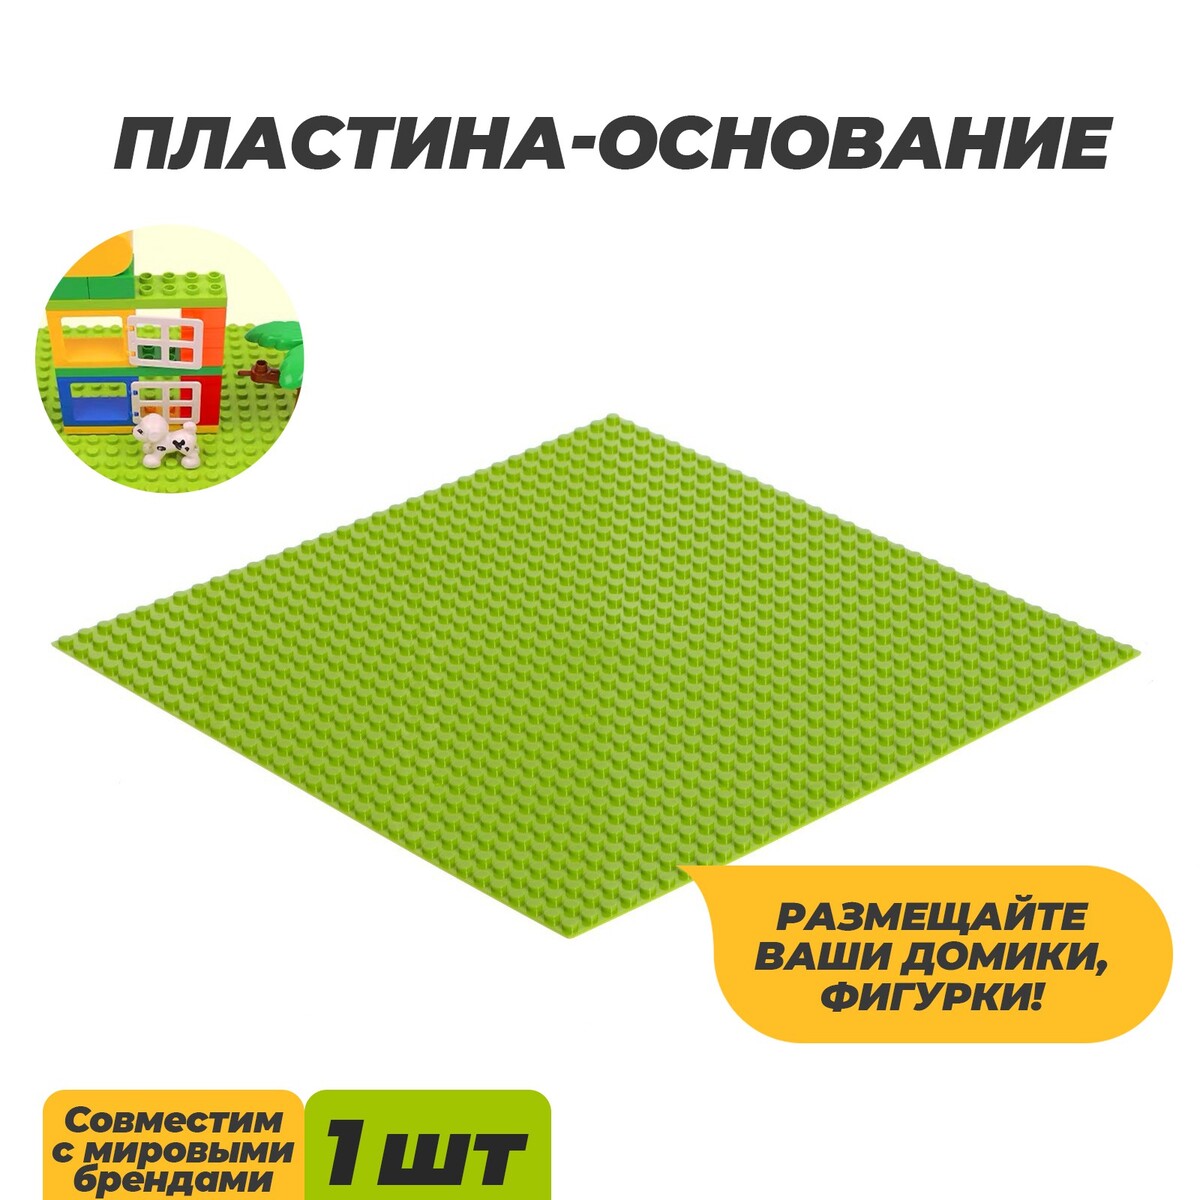 Пластина-основание для конструктора, 25,5 × 25,5 см, цвет салатовый пластина основание для конструктора 27 × 38 5 см салатовый